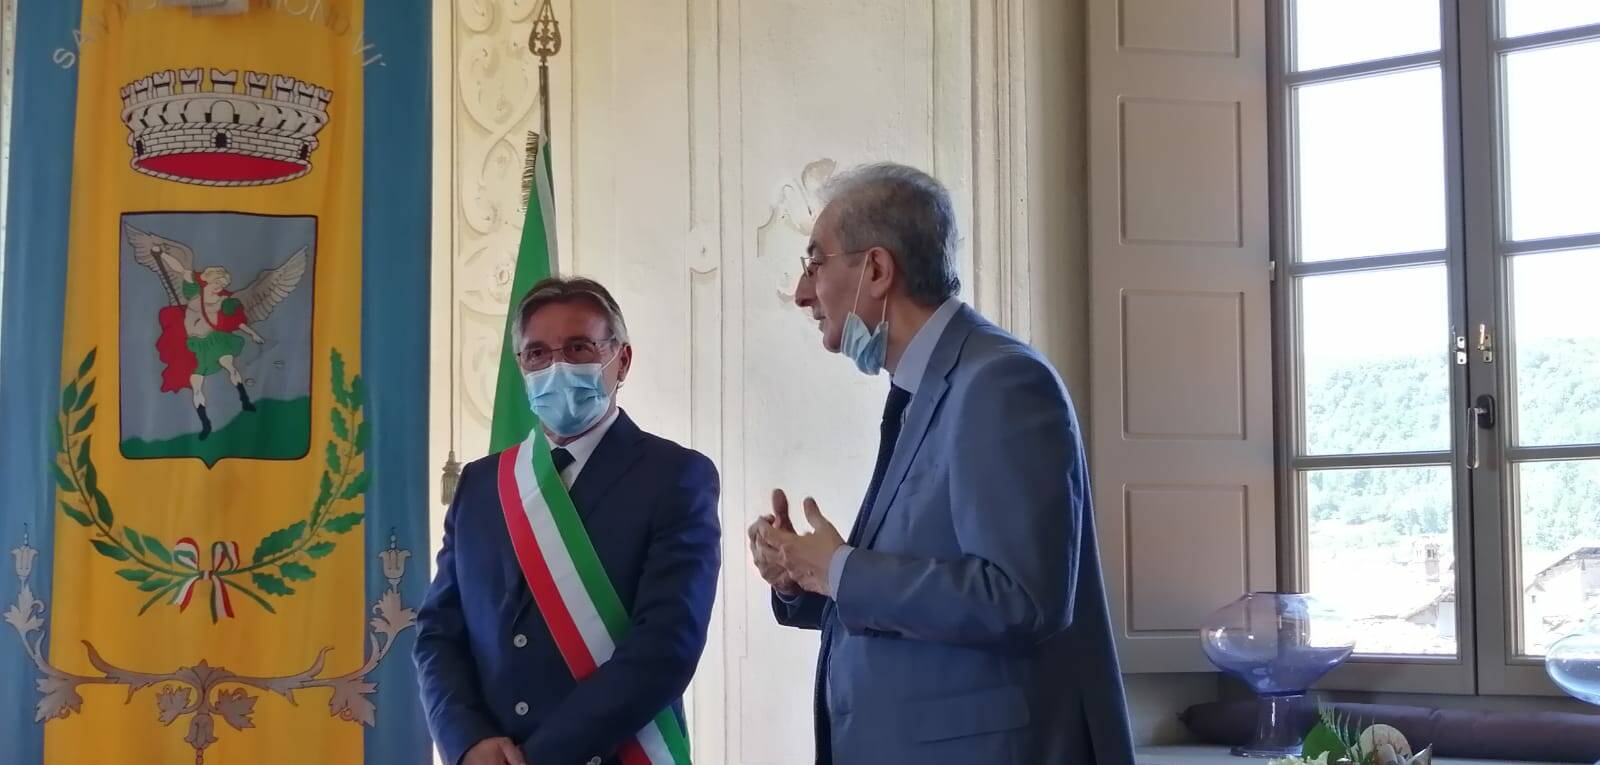 Prefetto di Cuneo in visita a San Michele Mondovì. Il sindaco: “Grande emozione”